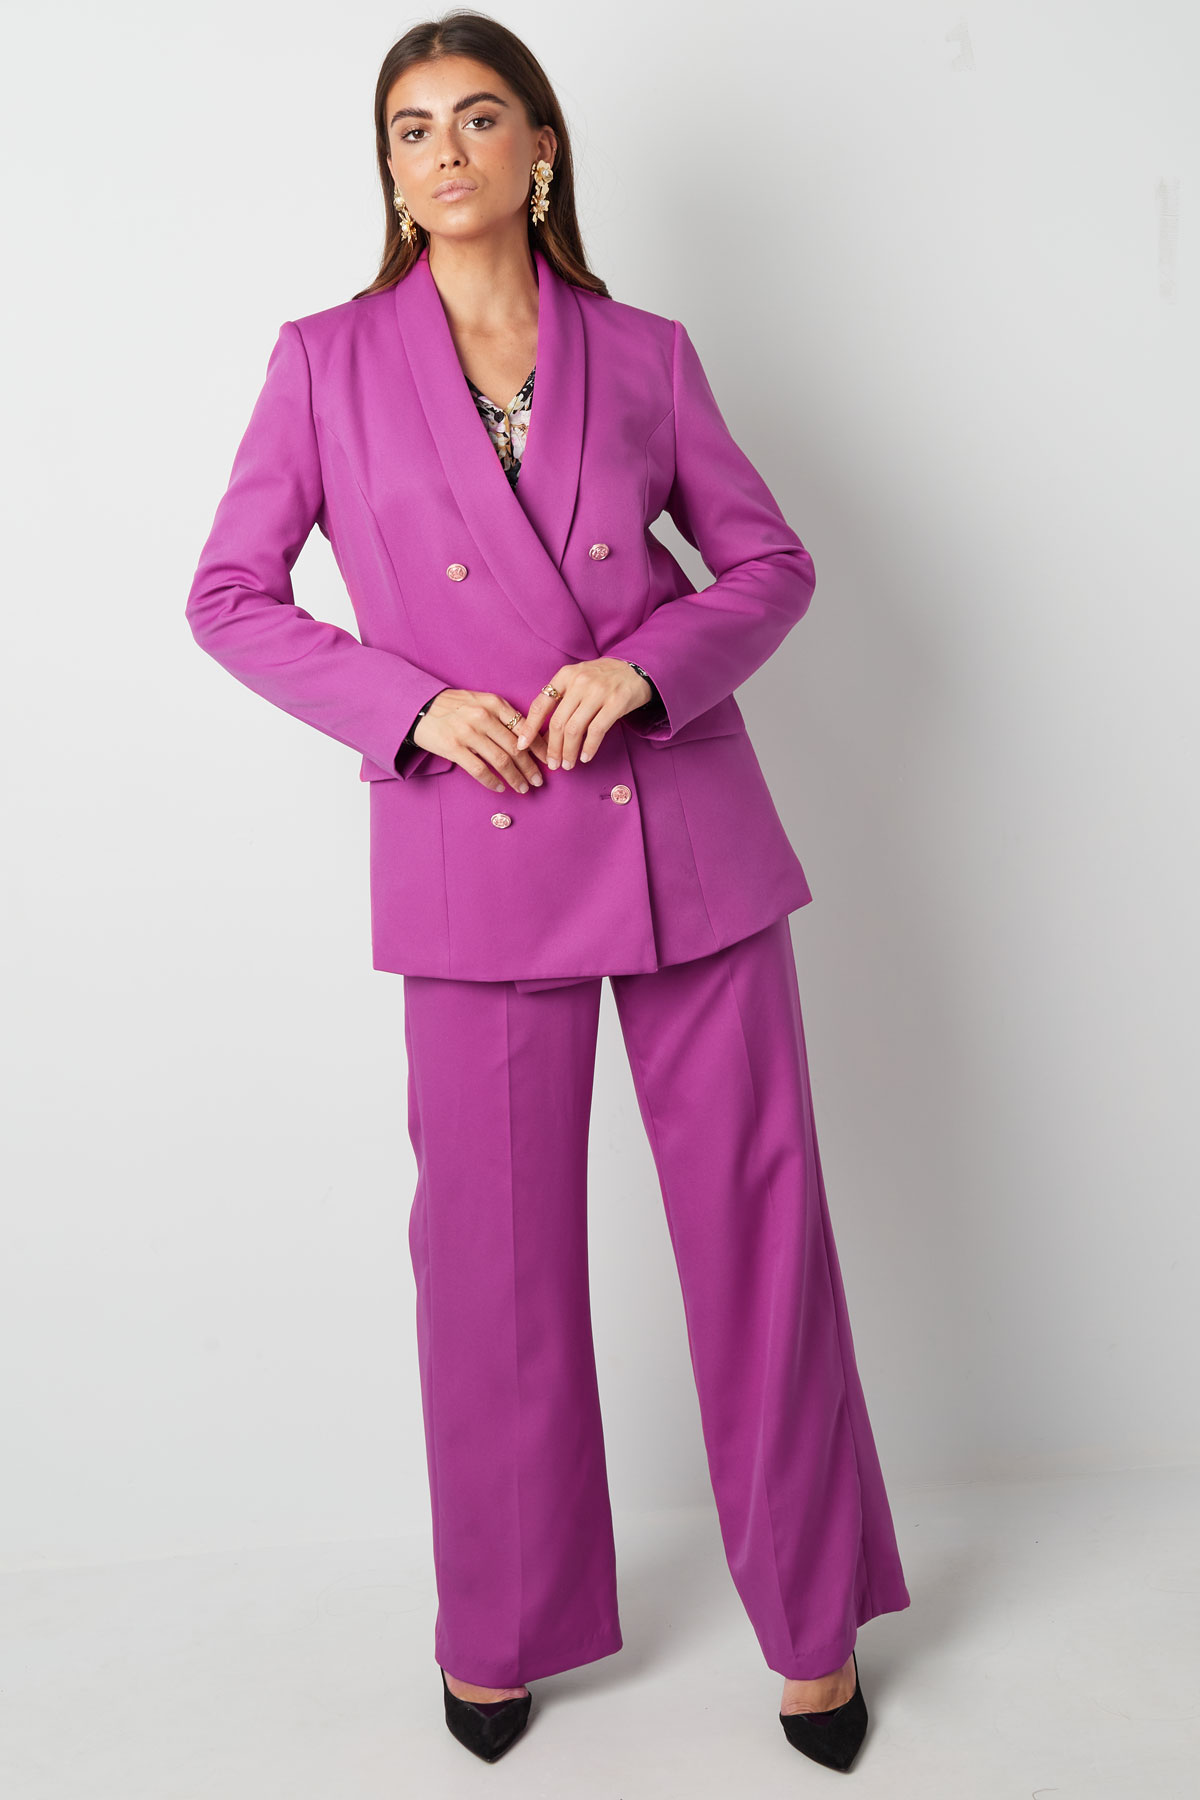 Pantalón plisado - violeta h5 Imagen8